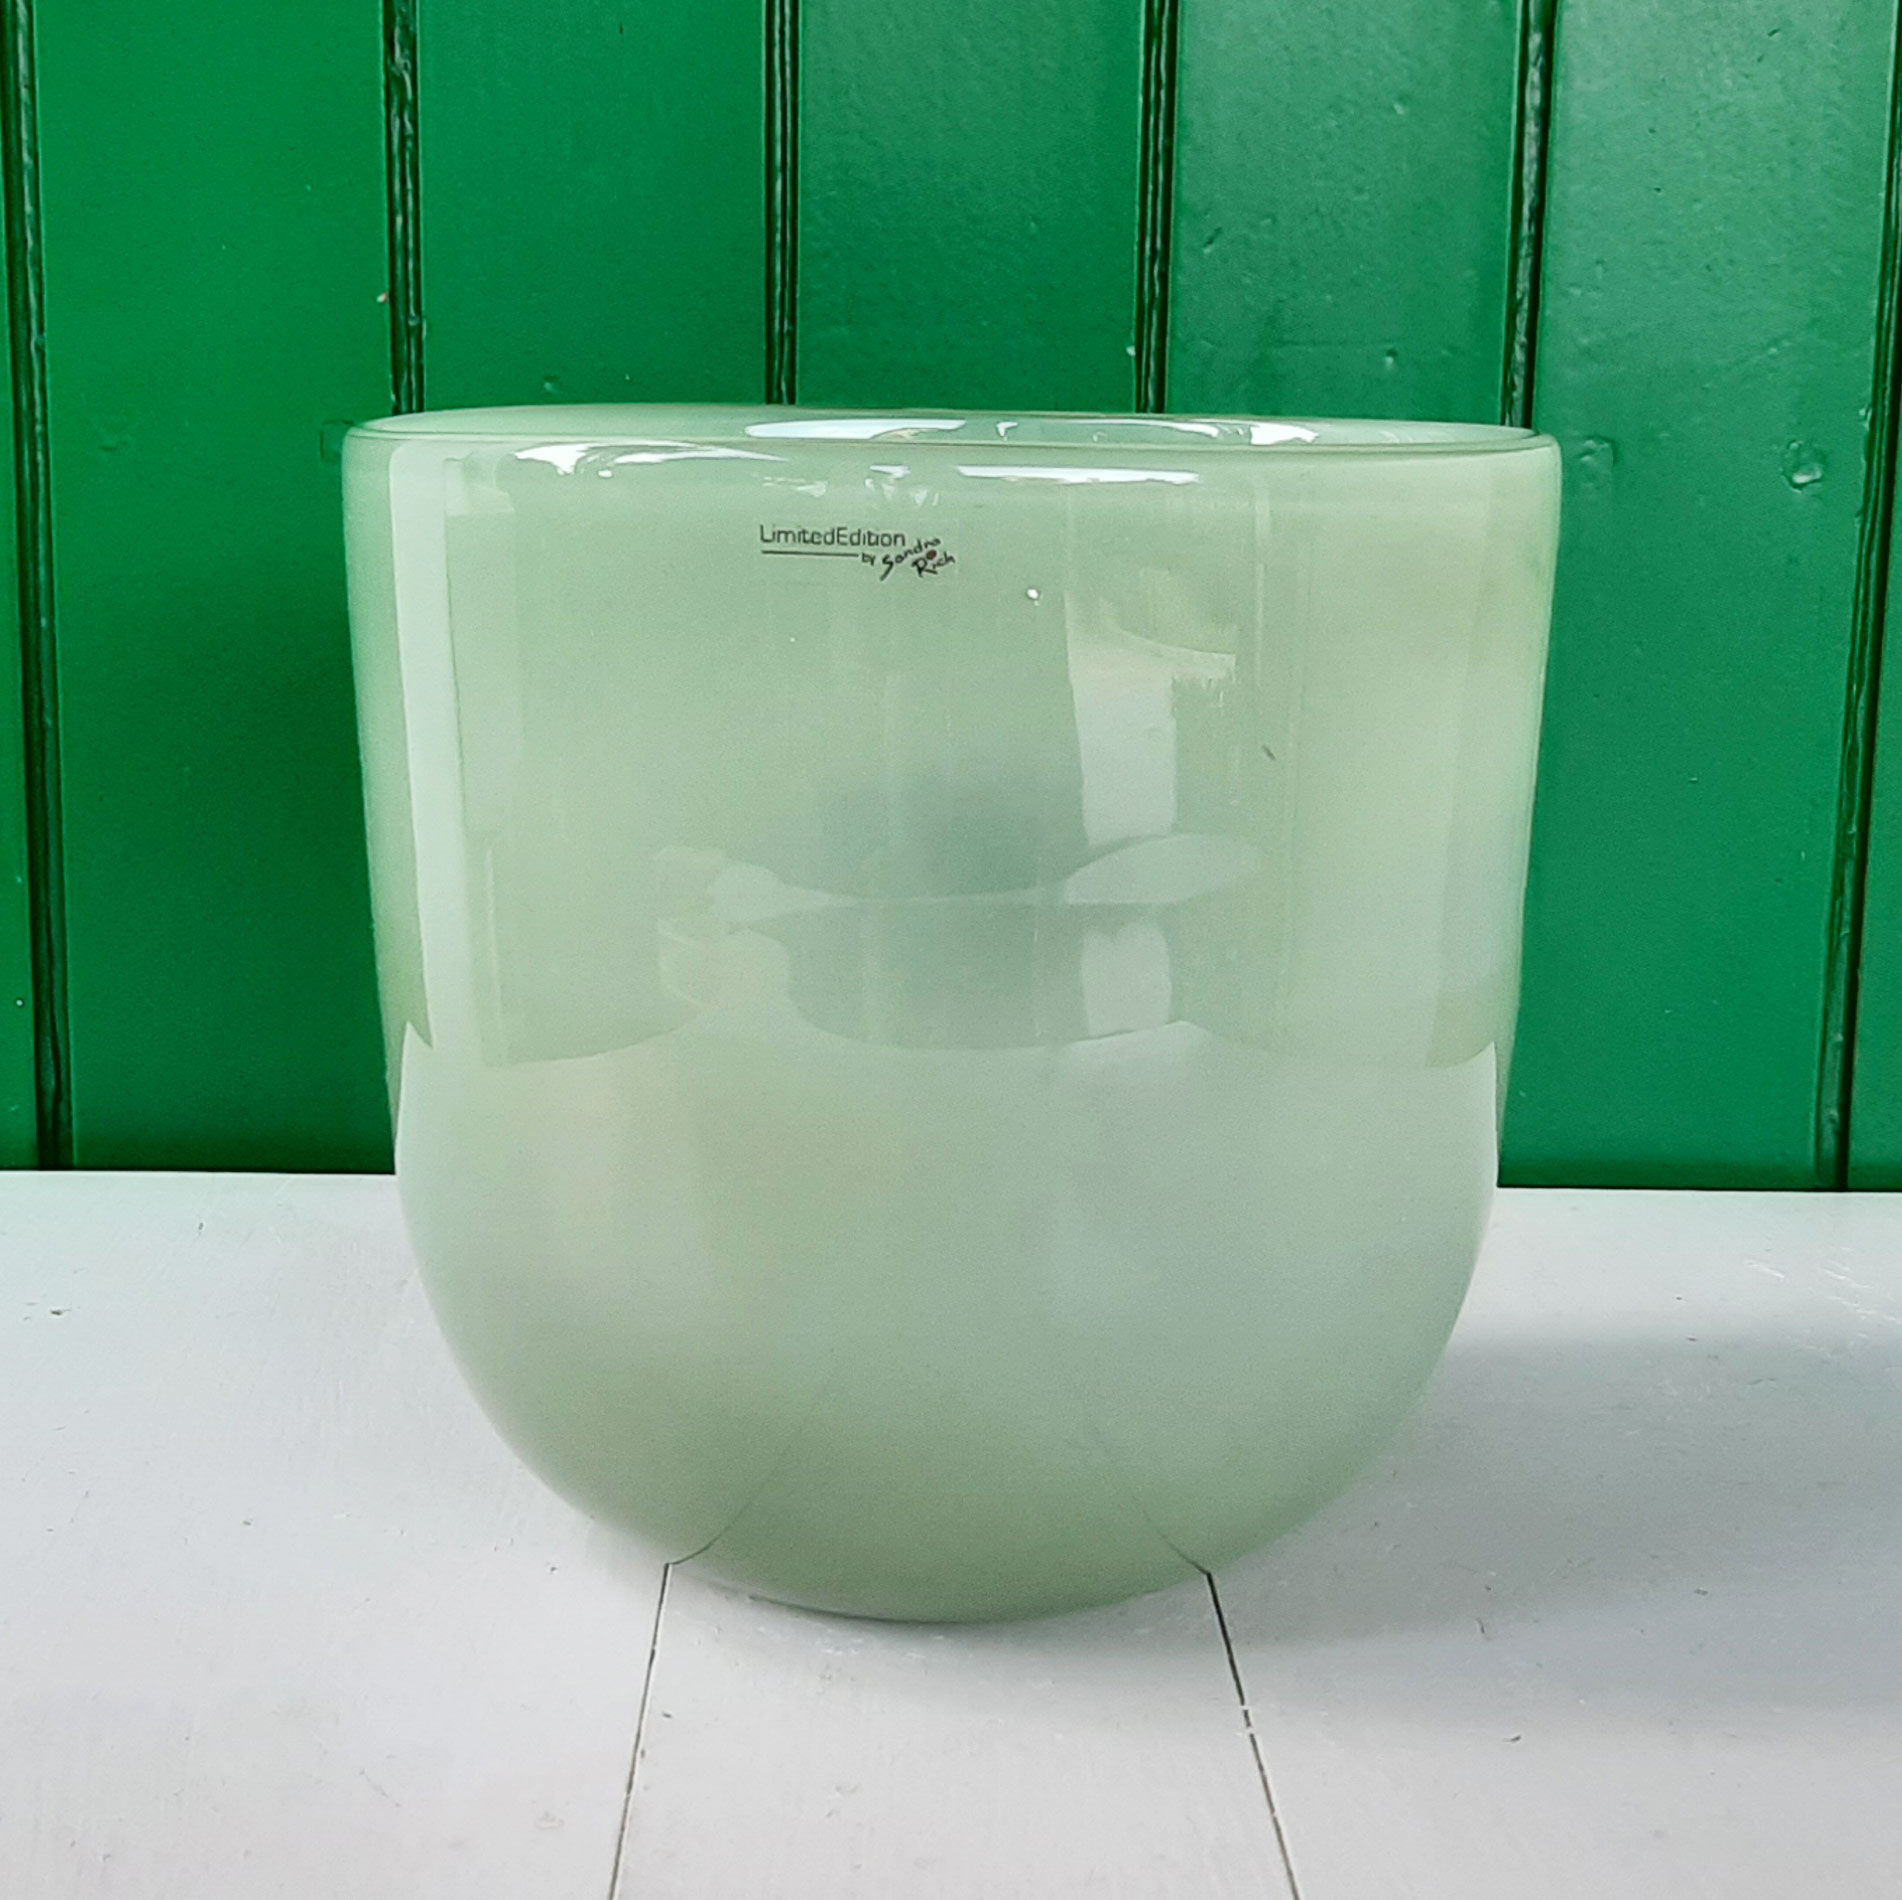 Base Rotonda in Vetro Sandra Rich, negozio online vasi vetro